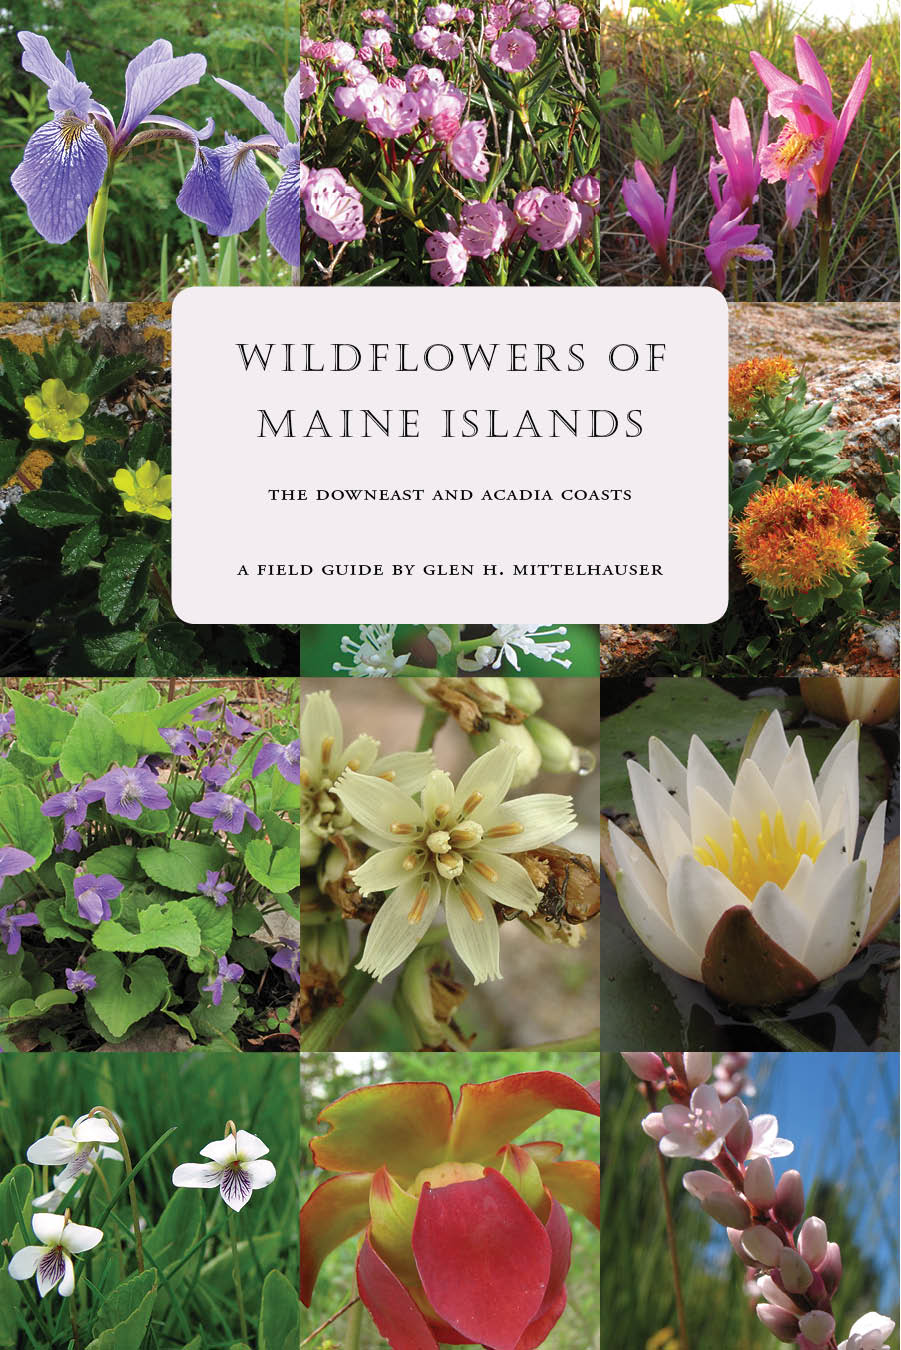 Wildflowers of Maine Islands by Glen Mittelhauser